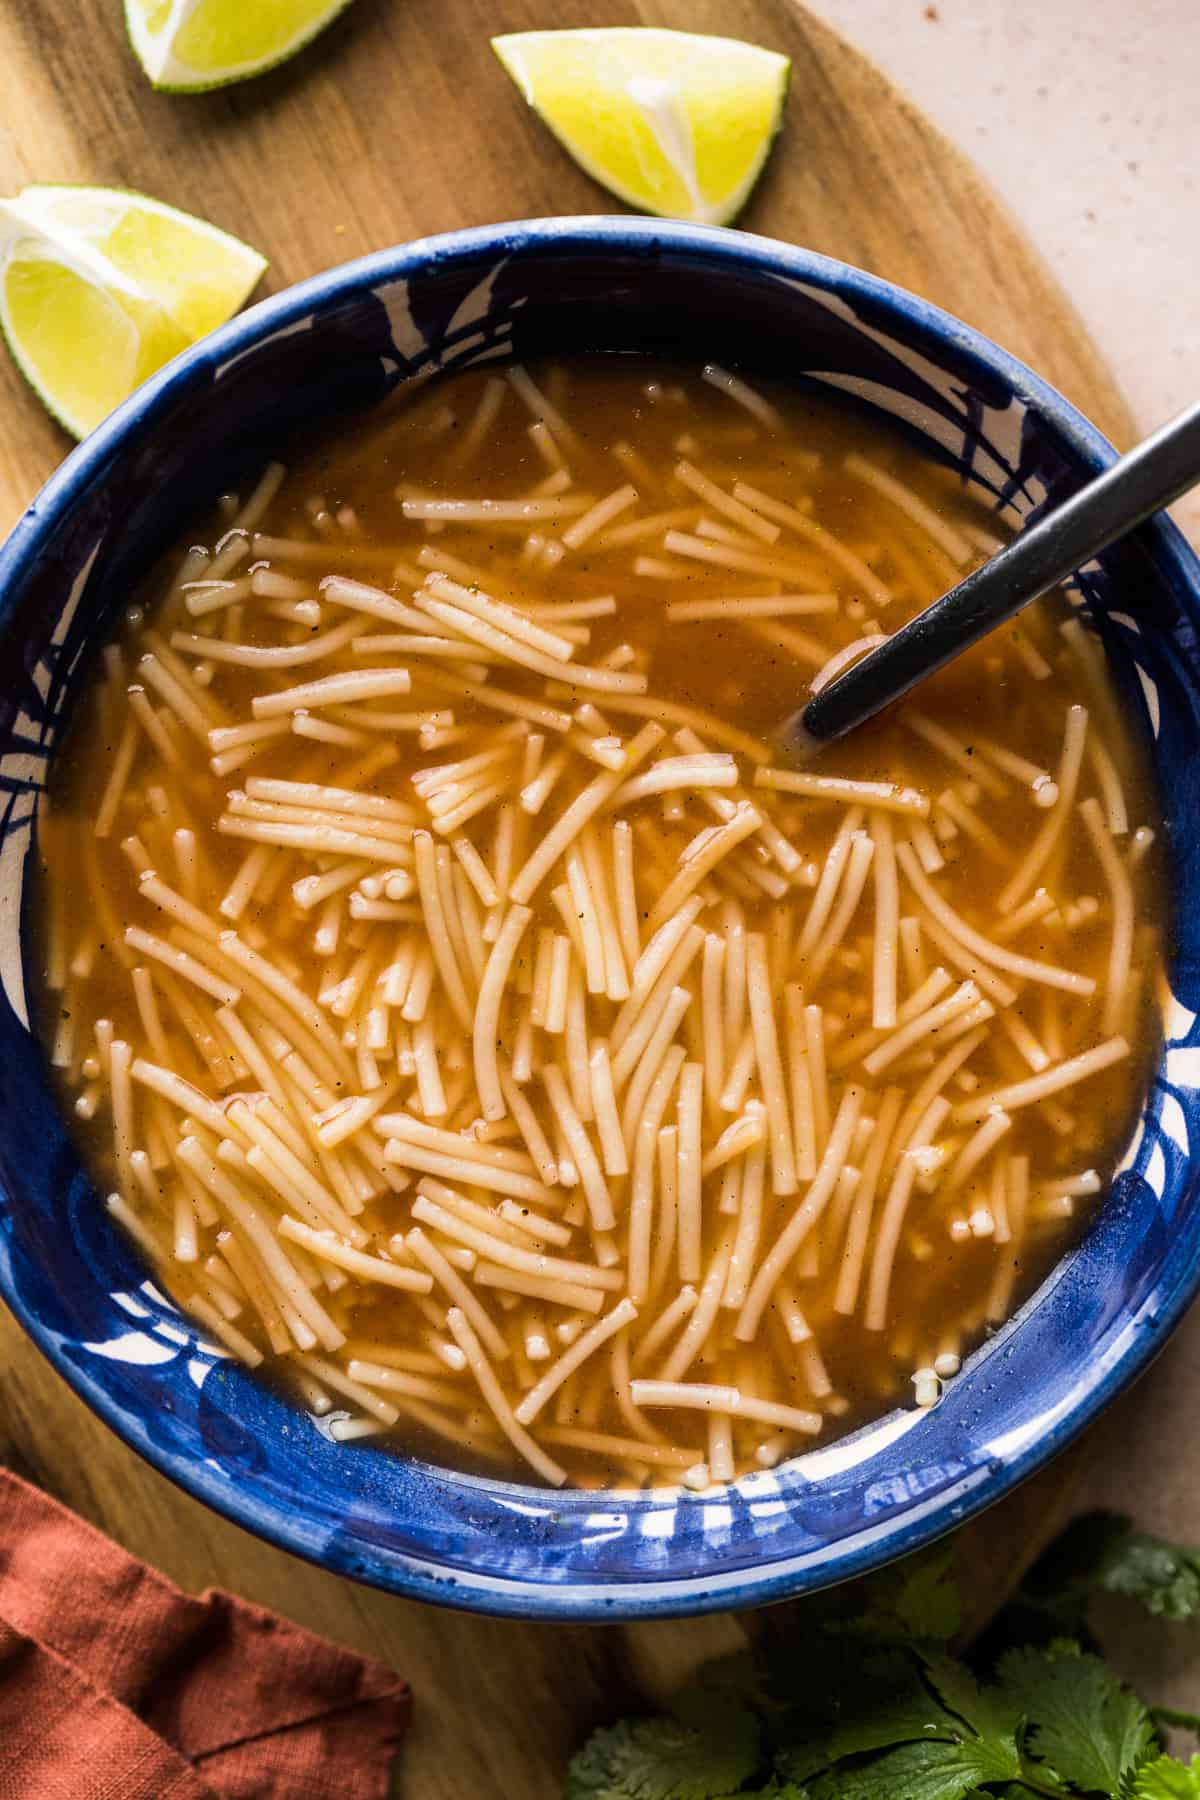 Sopa de Fideo - Mexican Noodle Soup